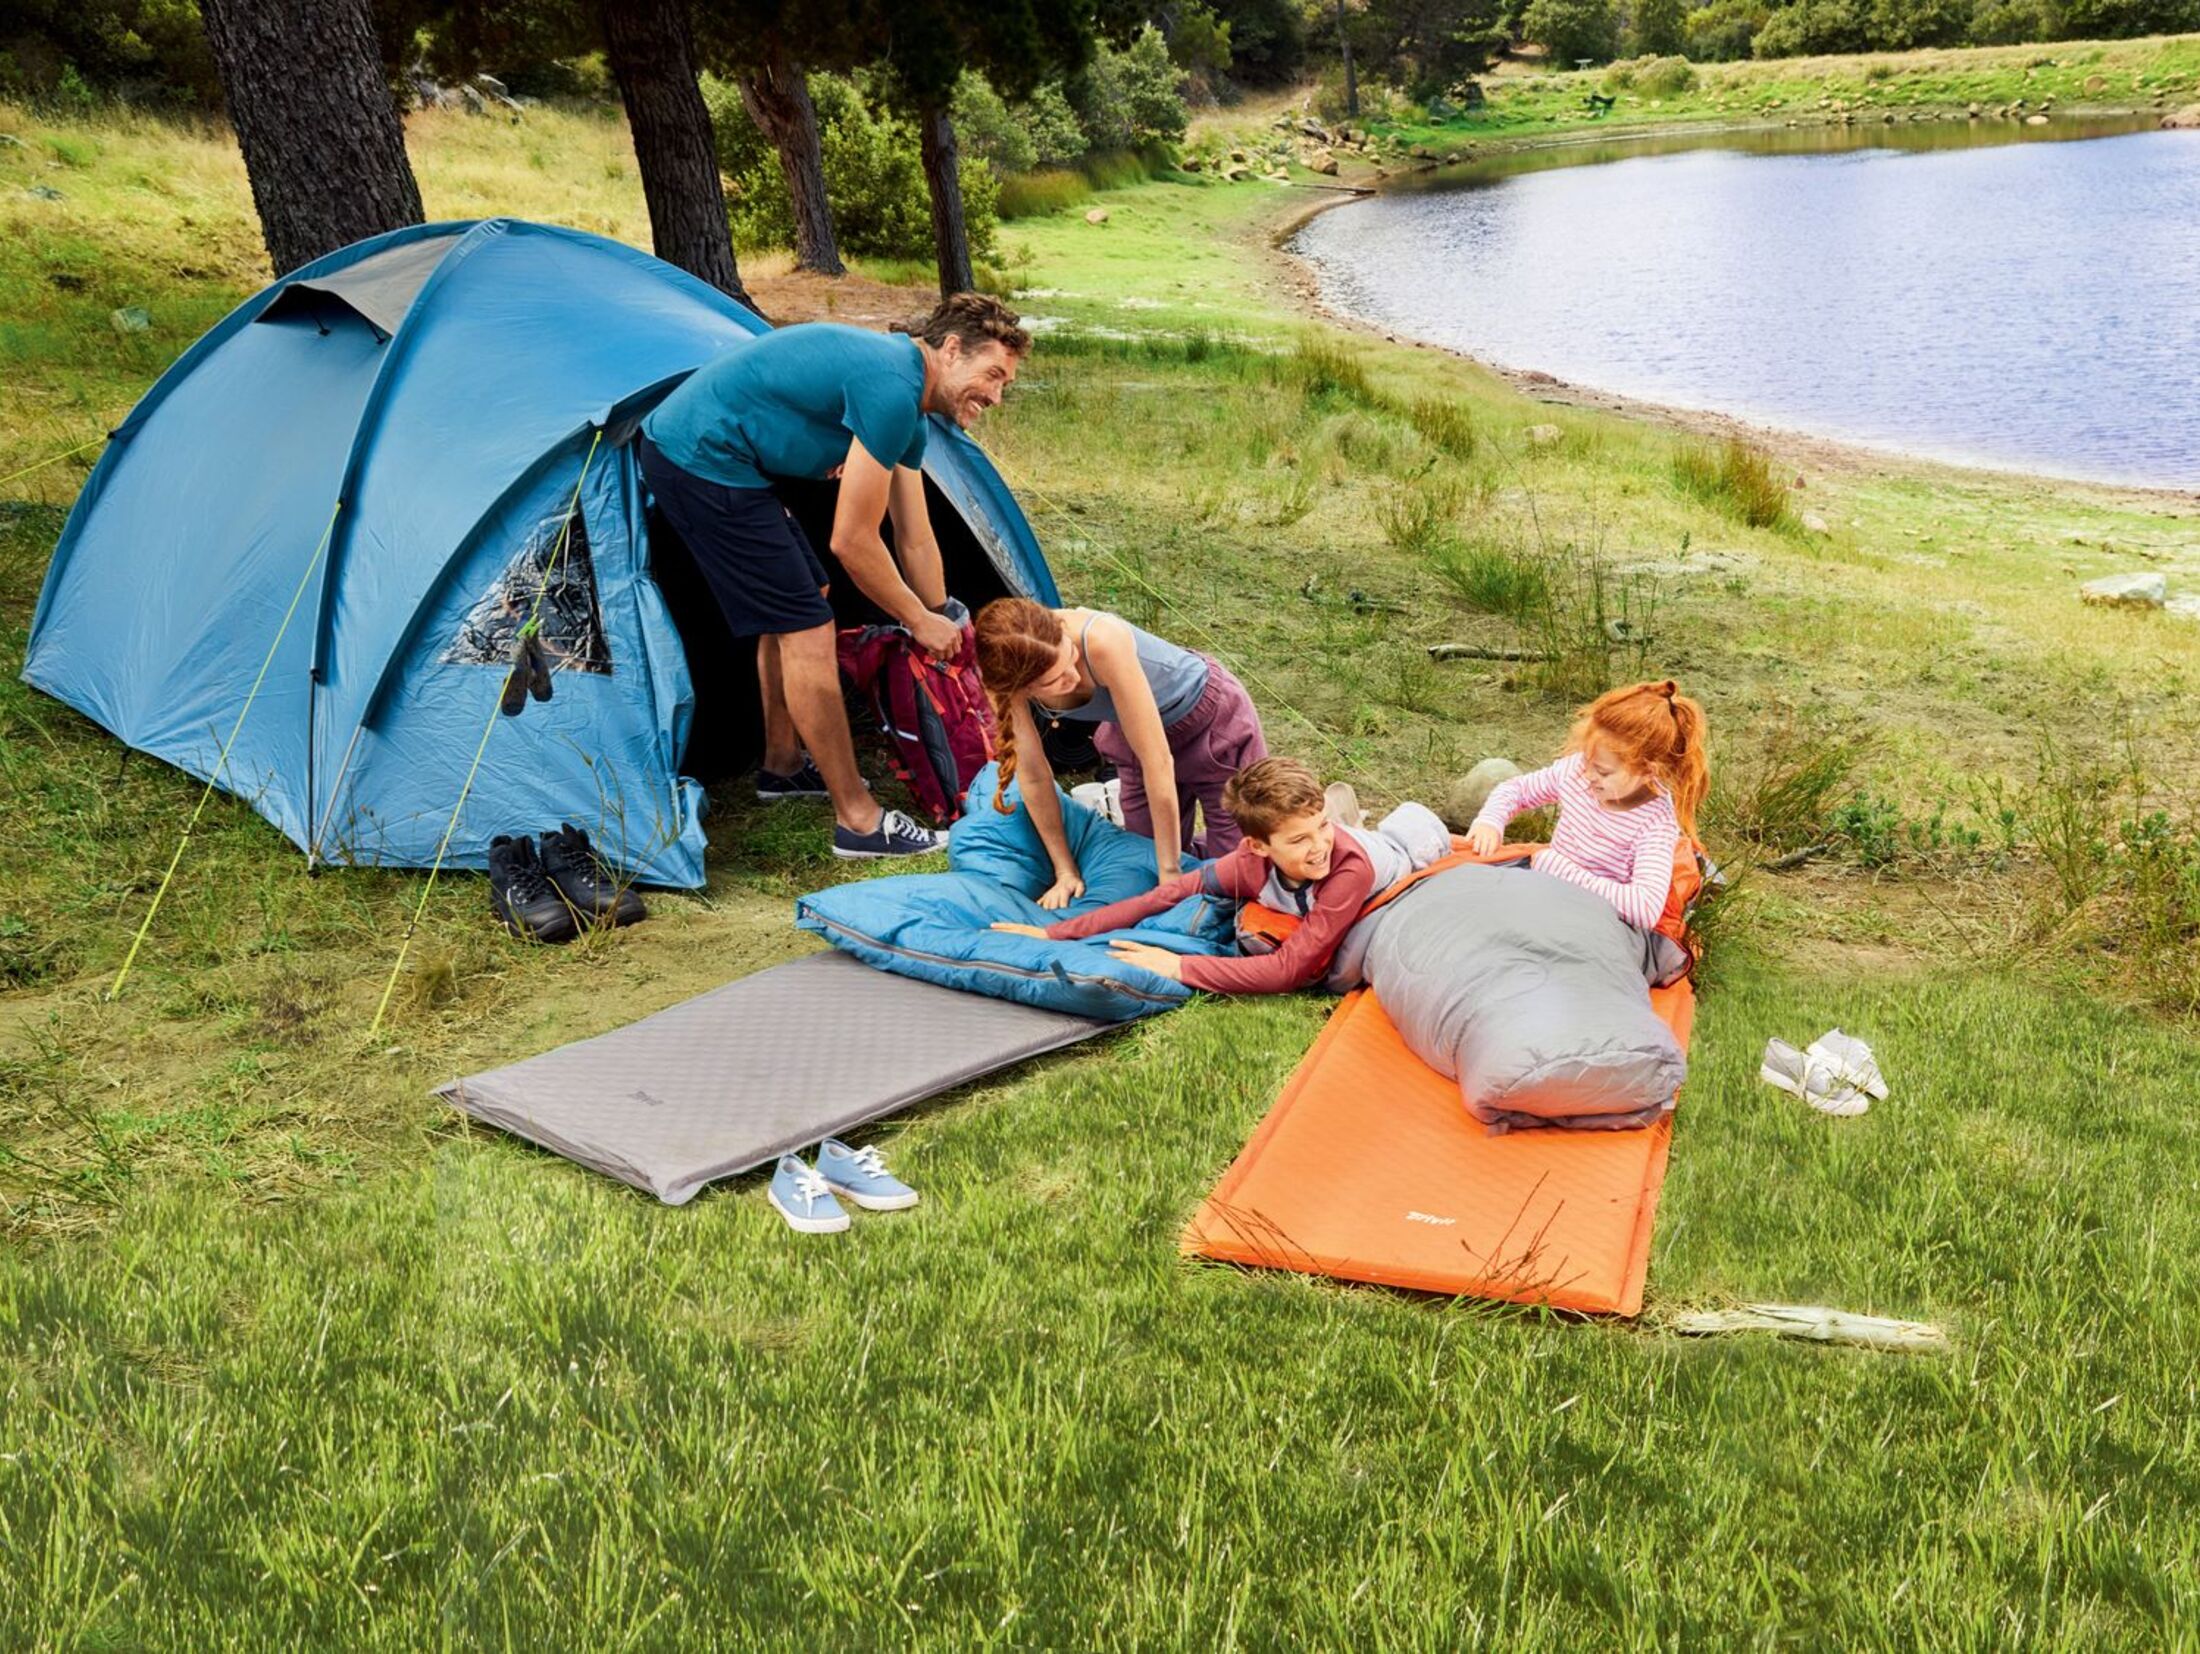 Billigzelte im Test: Discounter-Camping-Ausrüstung? Was kann